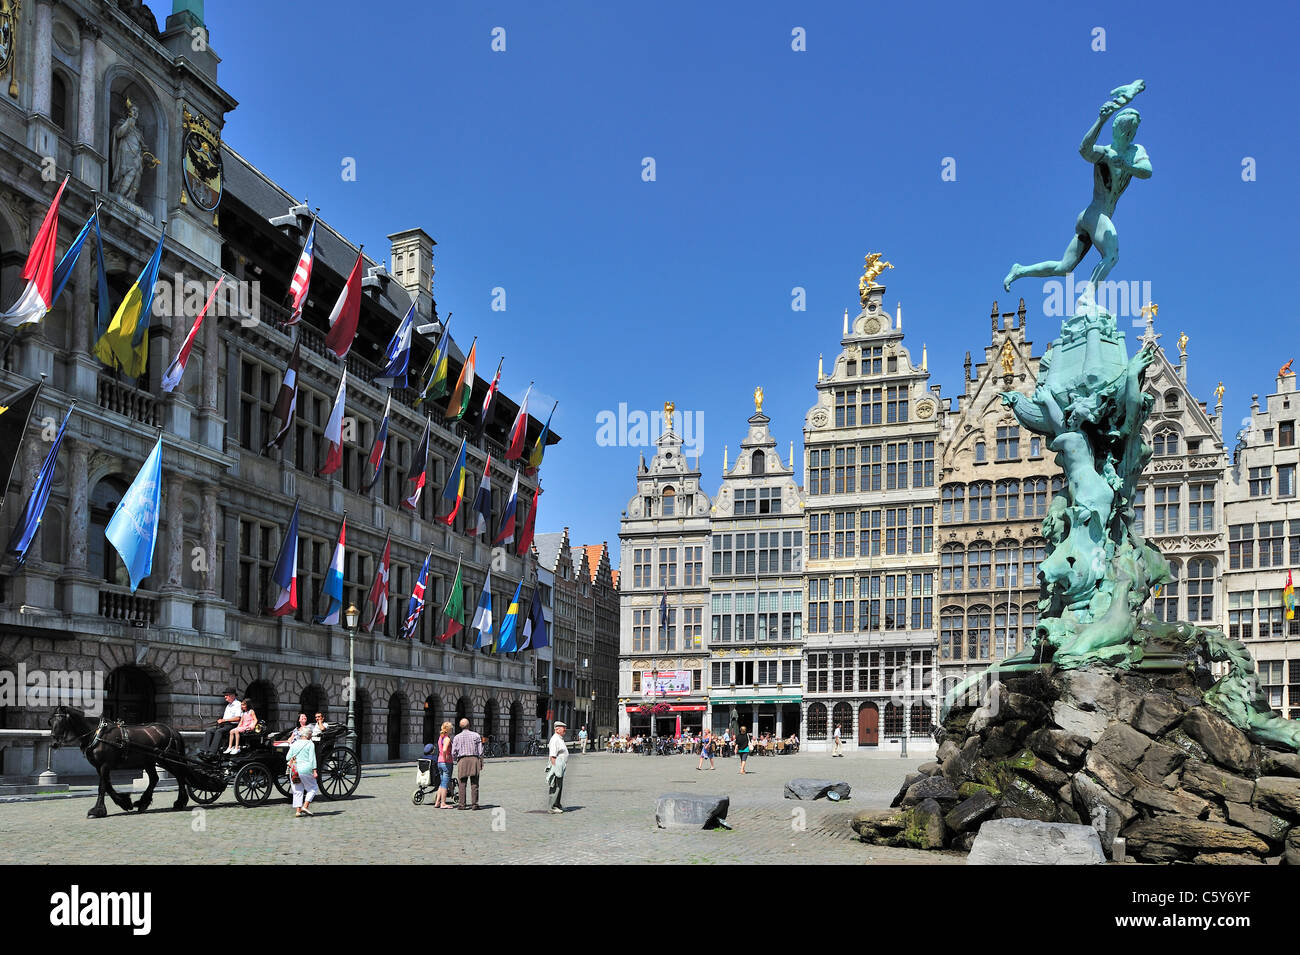 Antwerpen Rathaus, Zunfthäuser, die Statue von Brabo und Wagen auf dem Grote Markt / Main Square / Grand Place, Belgien Stockfoto